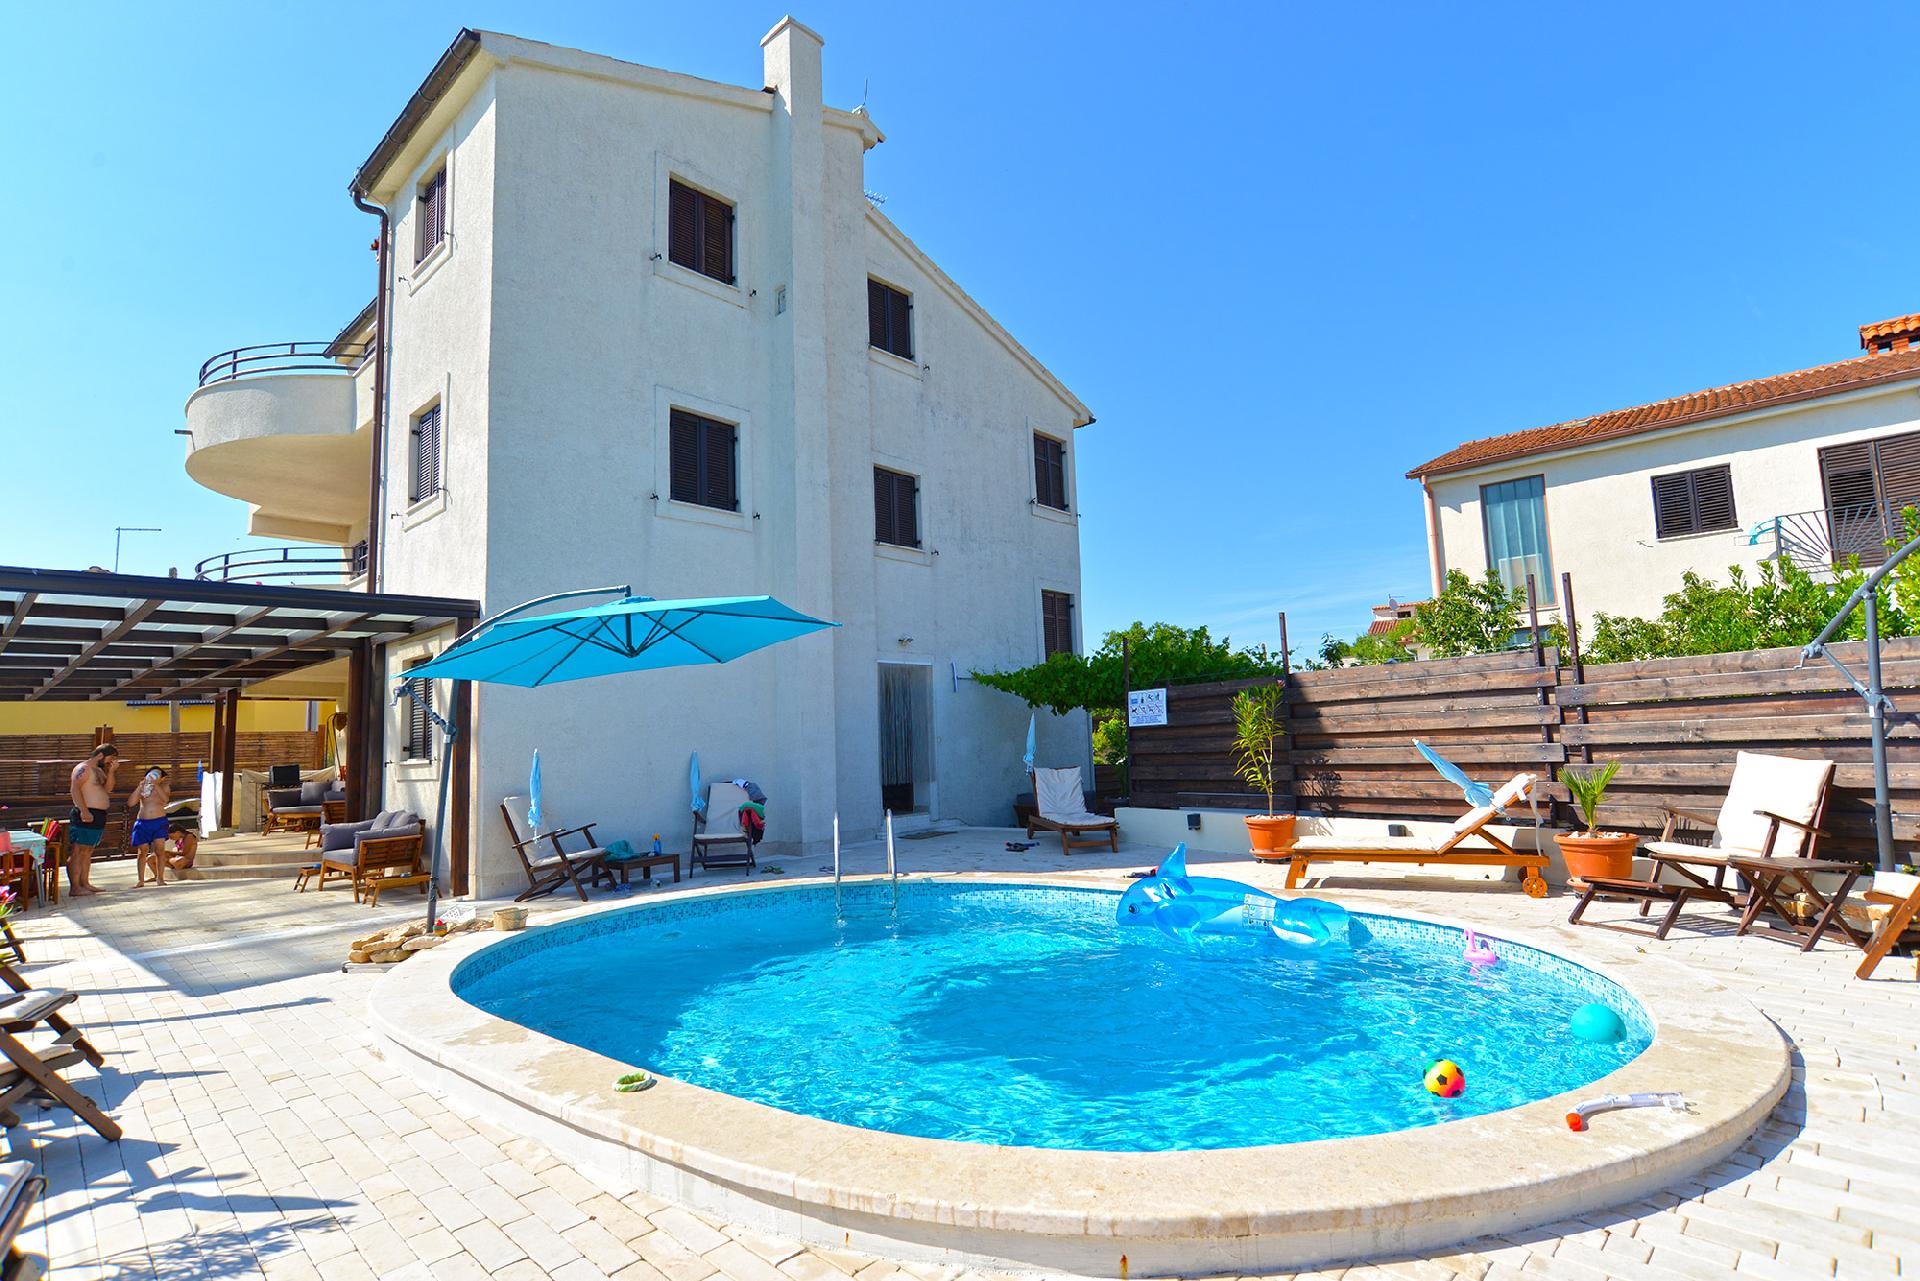 Ferienwohnung für 2 Personen ca. 41 m² i  in Istrien